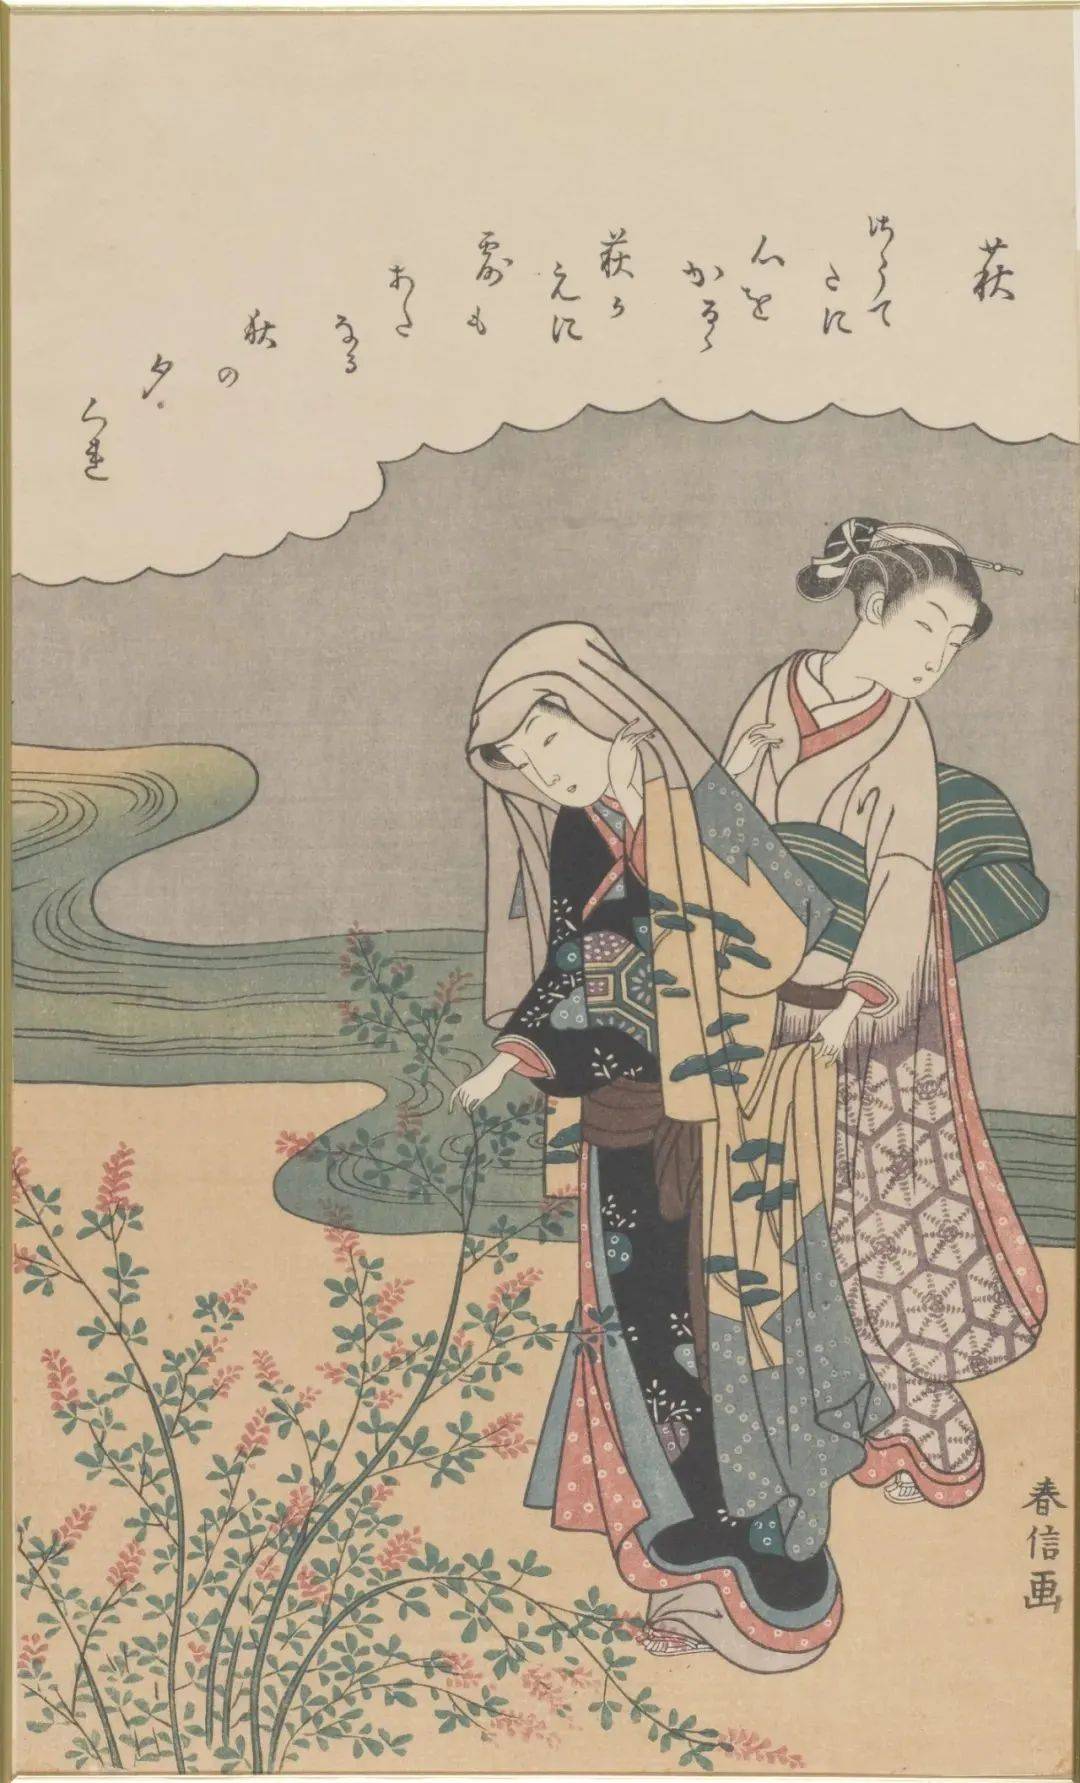 陈老莲人物画如何滋养影响了日本浮世绘